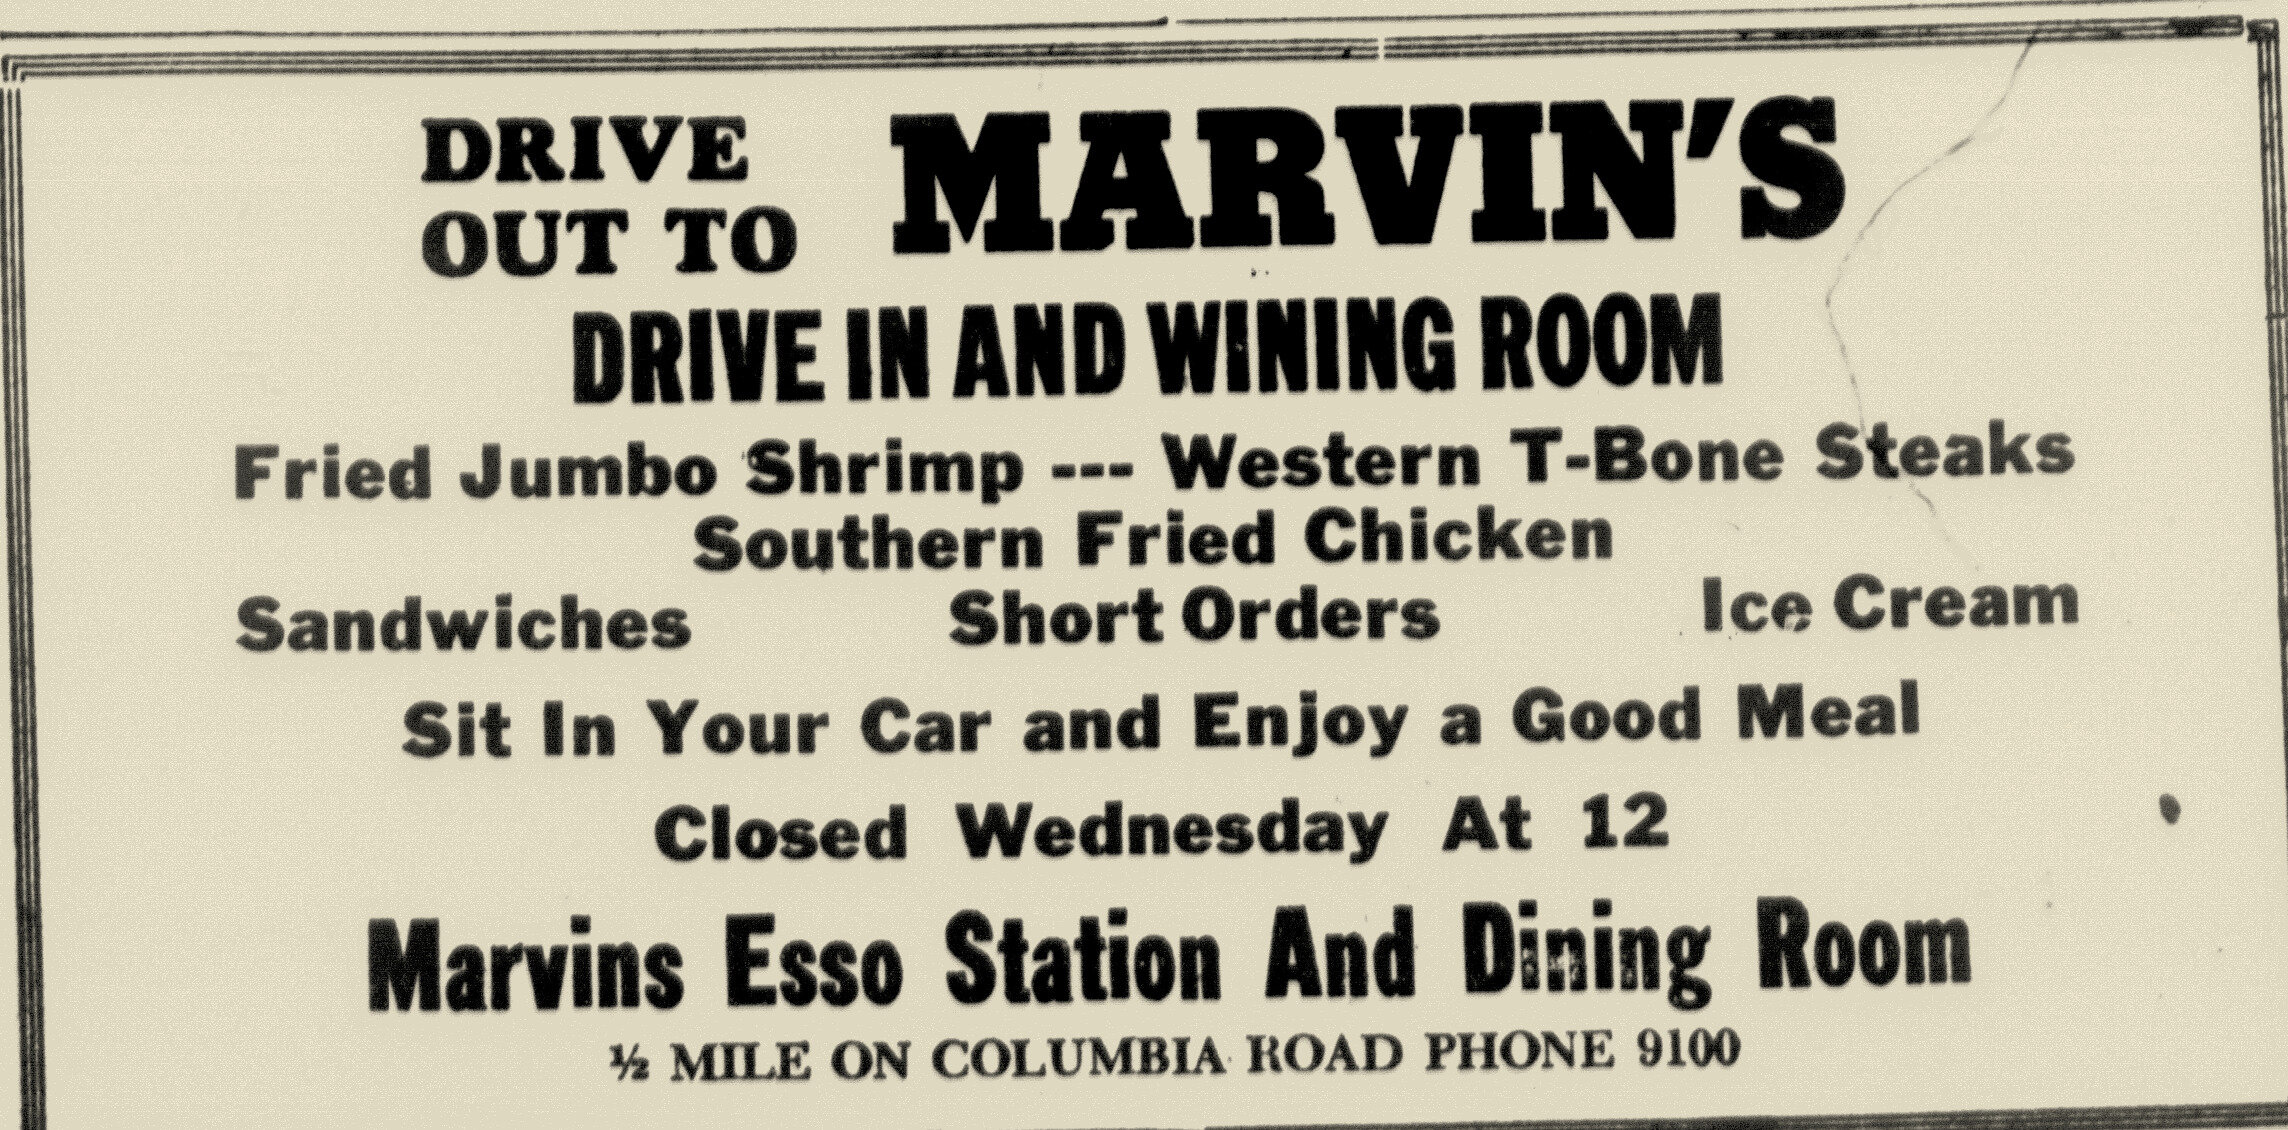 Marvins Esso Station & Dining Room, Aiken Standard & Review, 6-1-1949.jpg